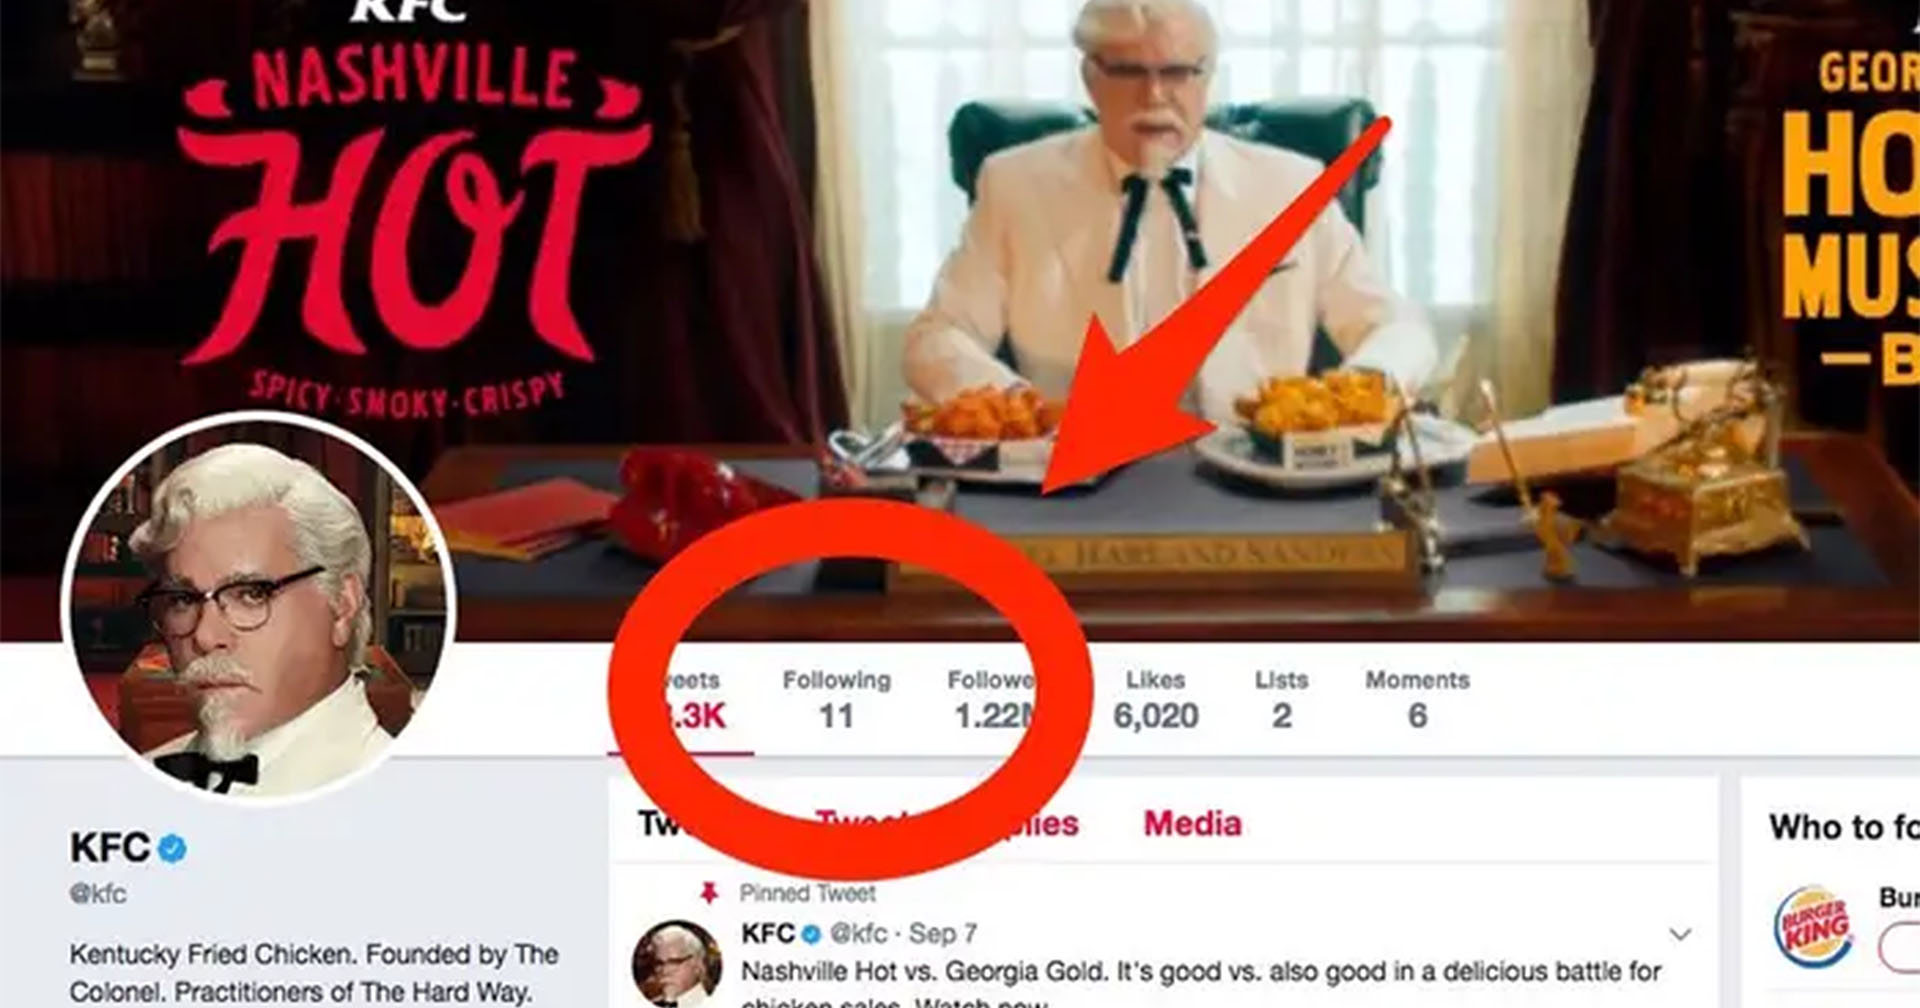 หนุ่มช่างสังเกตเห็น KFC ทวิตเตอร์ฟอลโลว์แค่ 11 คน ล้วนชื่อสมุนไพรและเครื่องเทศ KFC มอบภาพเขียนให้เป็นรางวัล